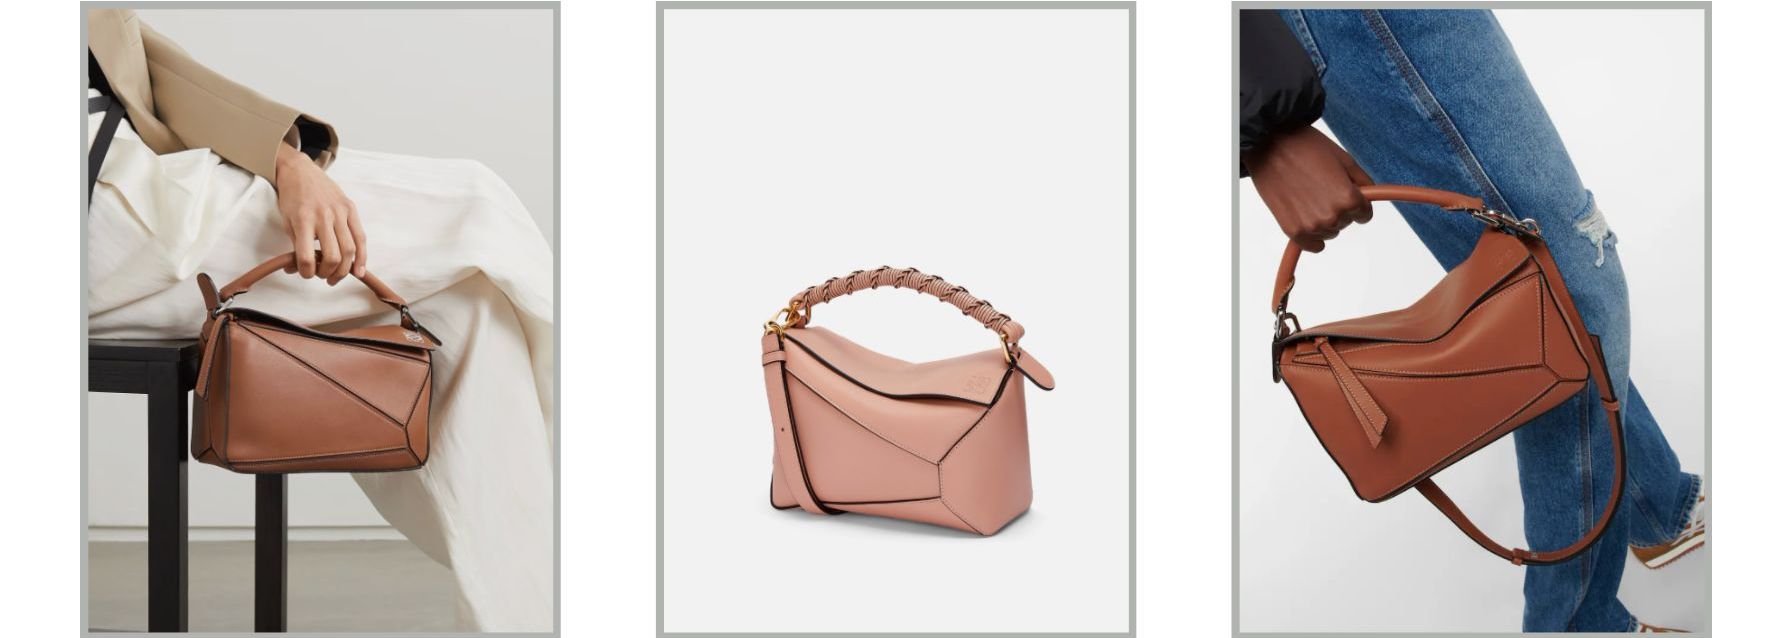 Top 5 Quiet Luxury Handbags